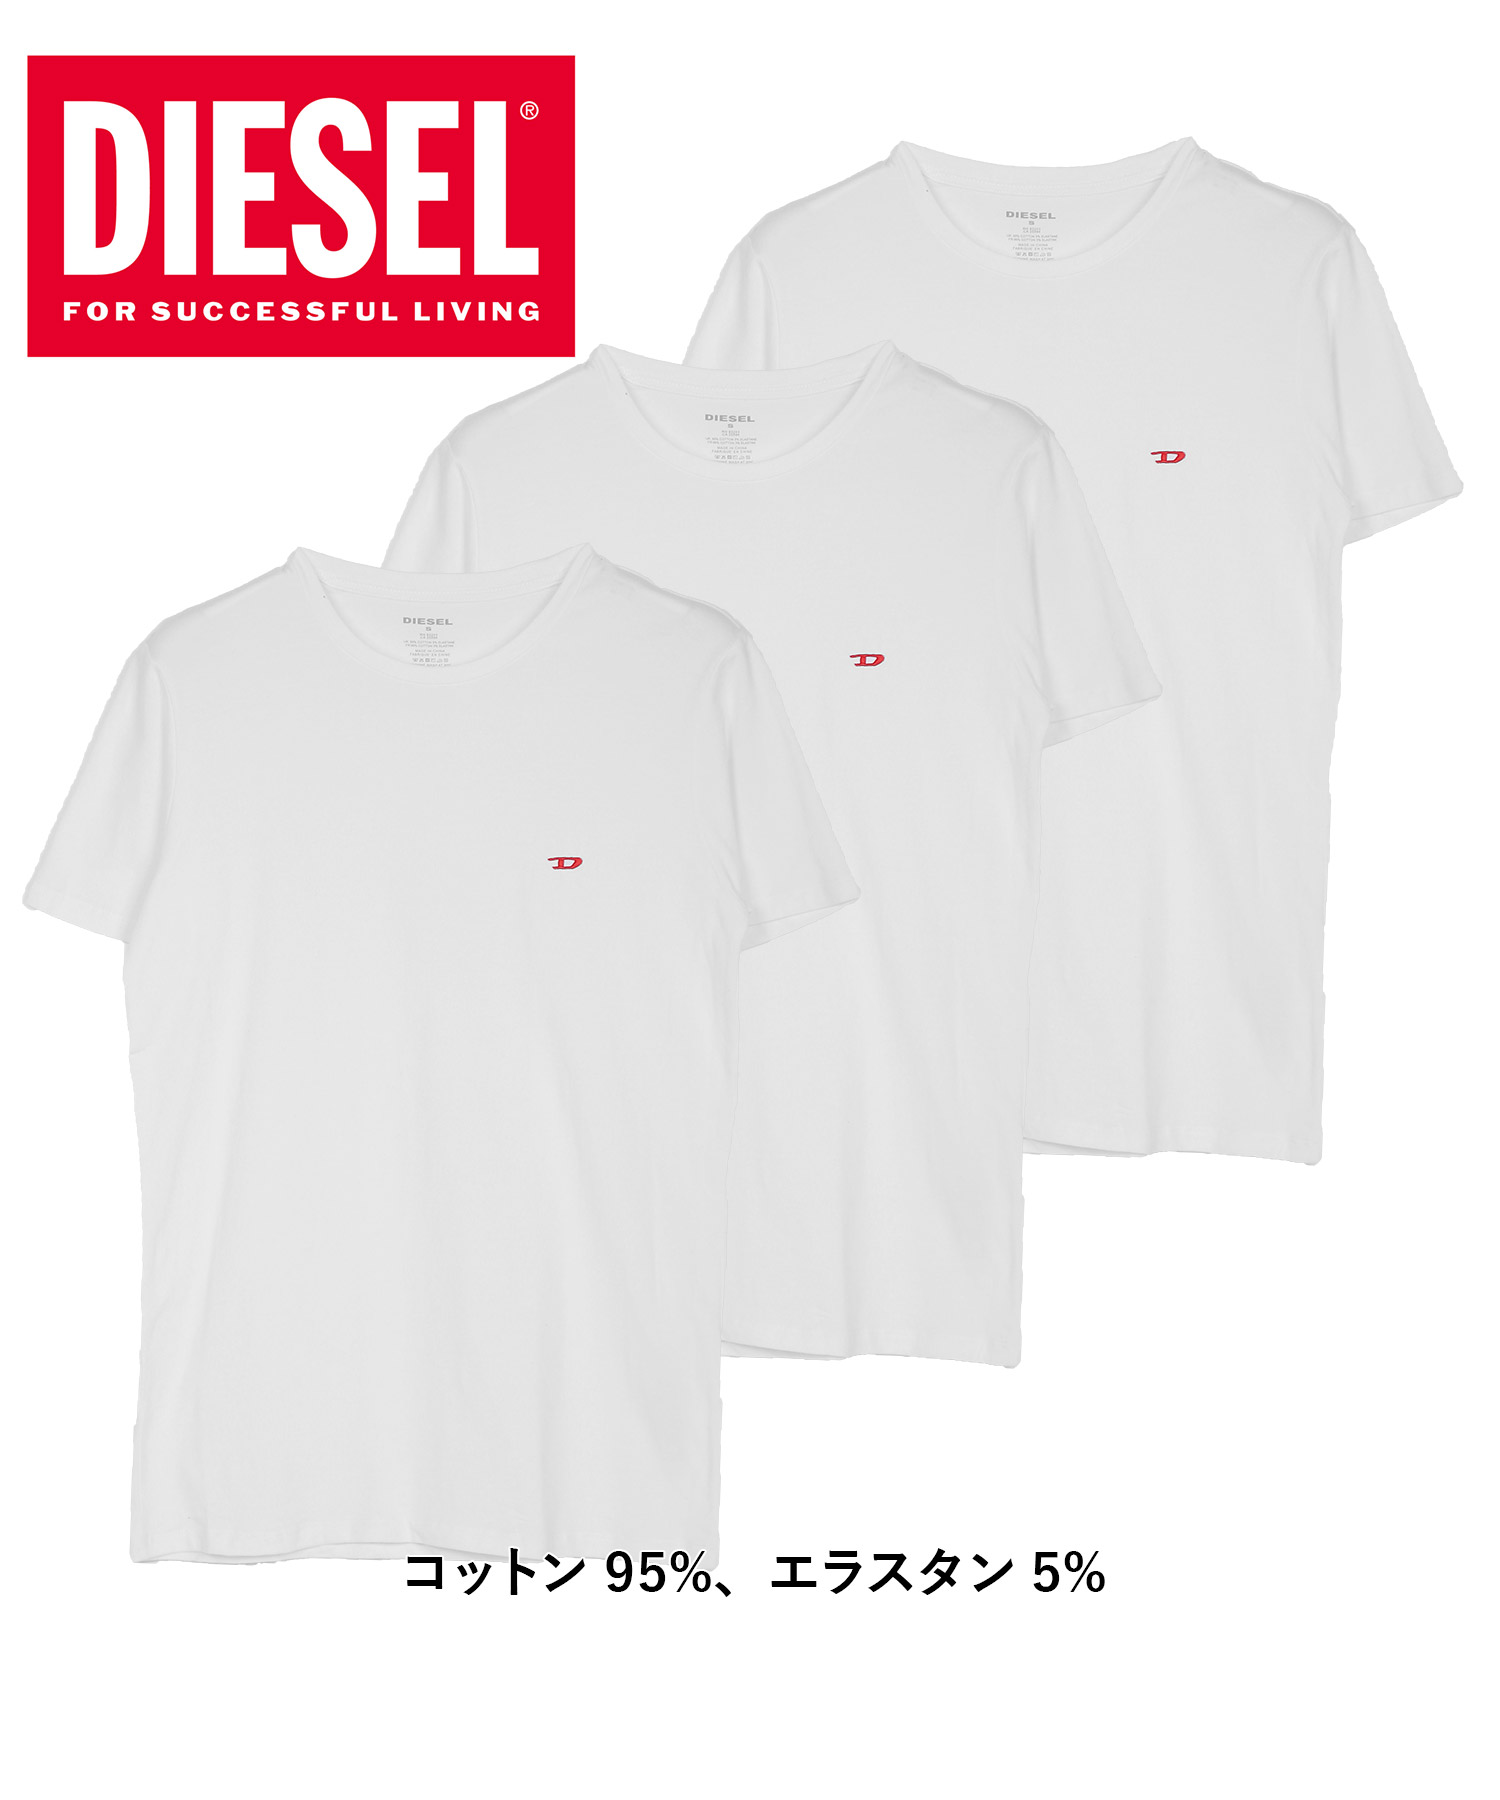 ディーゼル Tシャツ 3枚セット メンズ 肌着 綿100% おしゃれ かっこいい 大きいサイズ ロゴ...